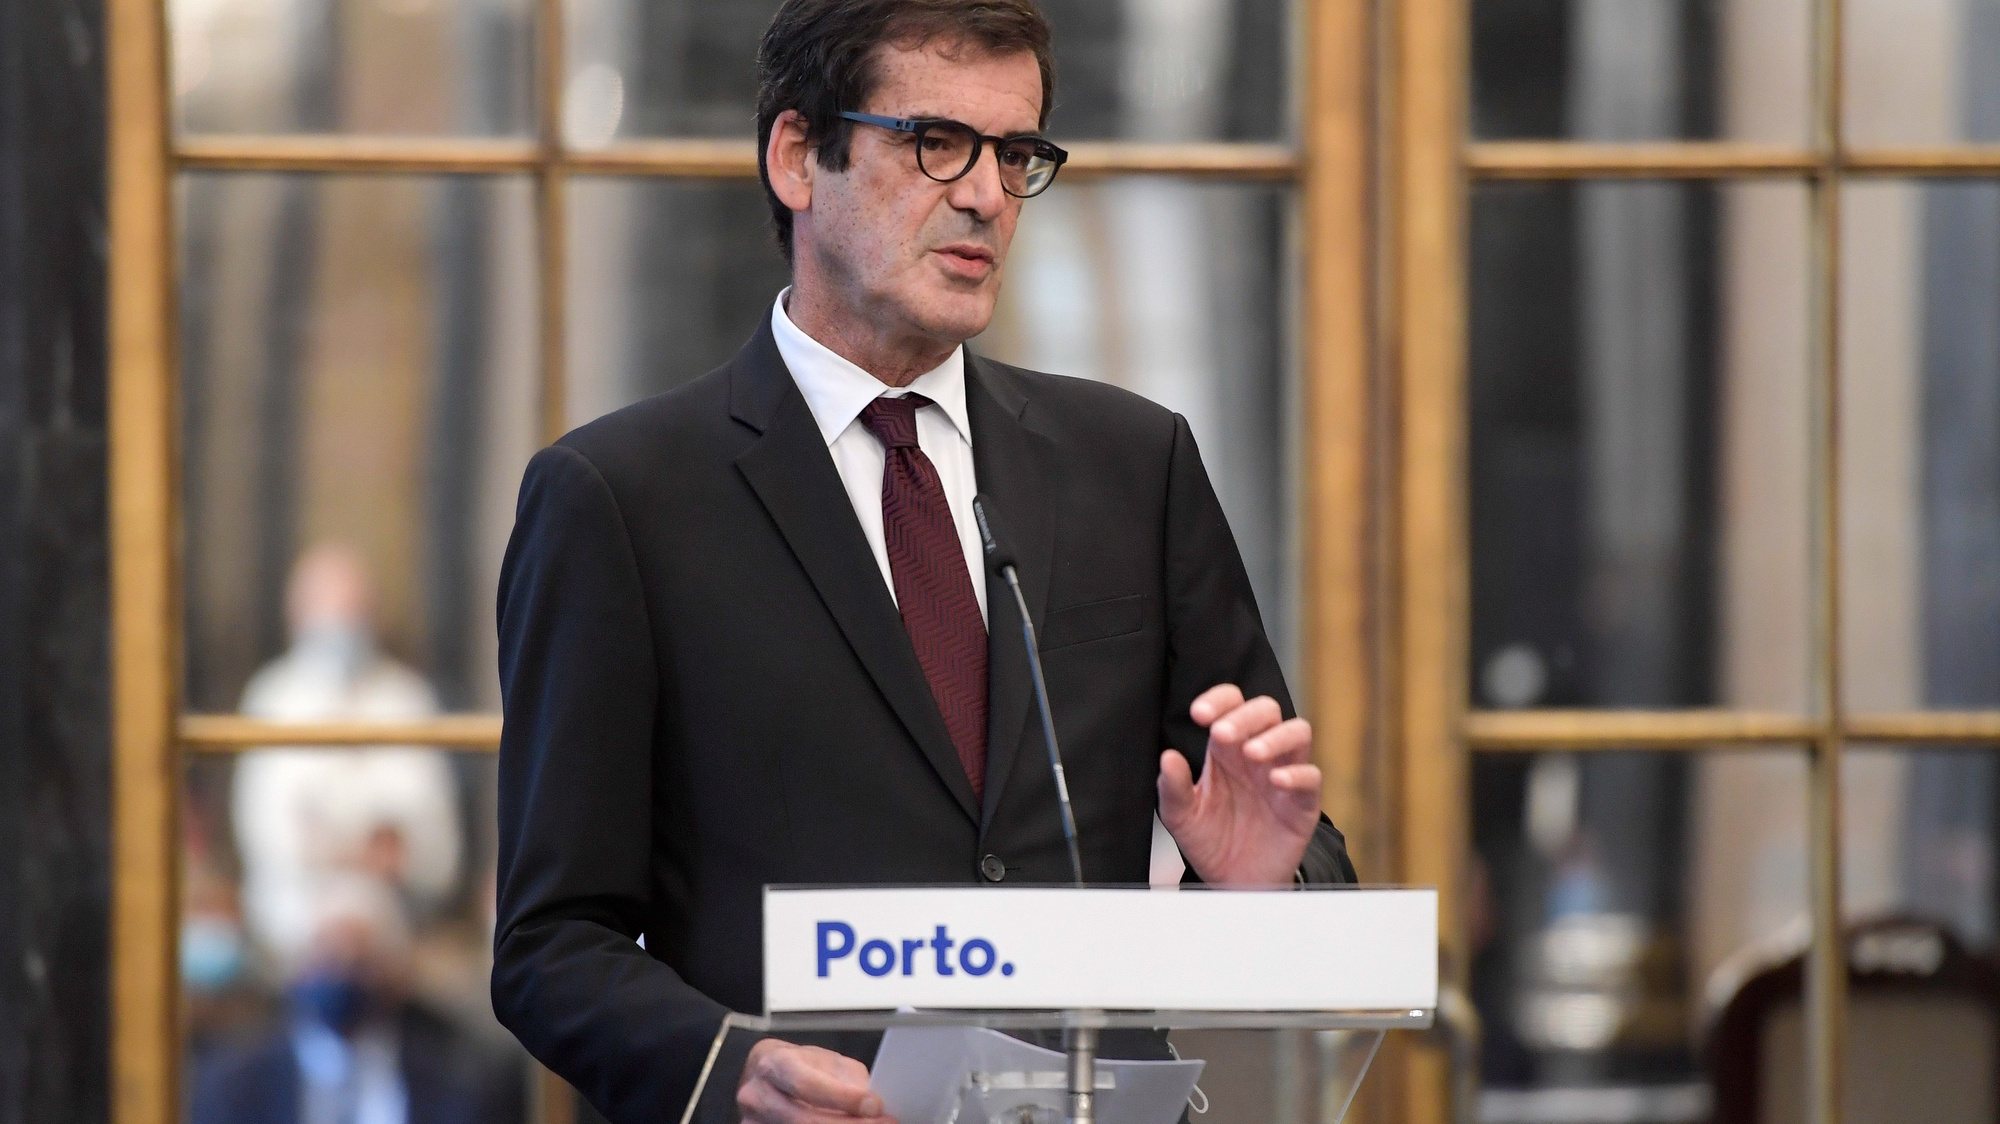 O Presidente da Câmara Municipal do Porto, Rui Moreira, discursa durante a cerimónia de homologação do Acordo de Colaboração no âmbito do Primeiro Direito para o Município do Porto, que decorreu no ediifício da Câmara Municipal, no Porto. 16 de novembro de 2020. FERNANDO VELUDO/LUSA